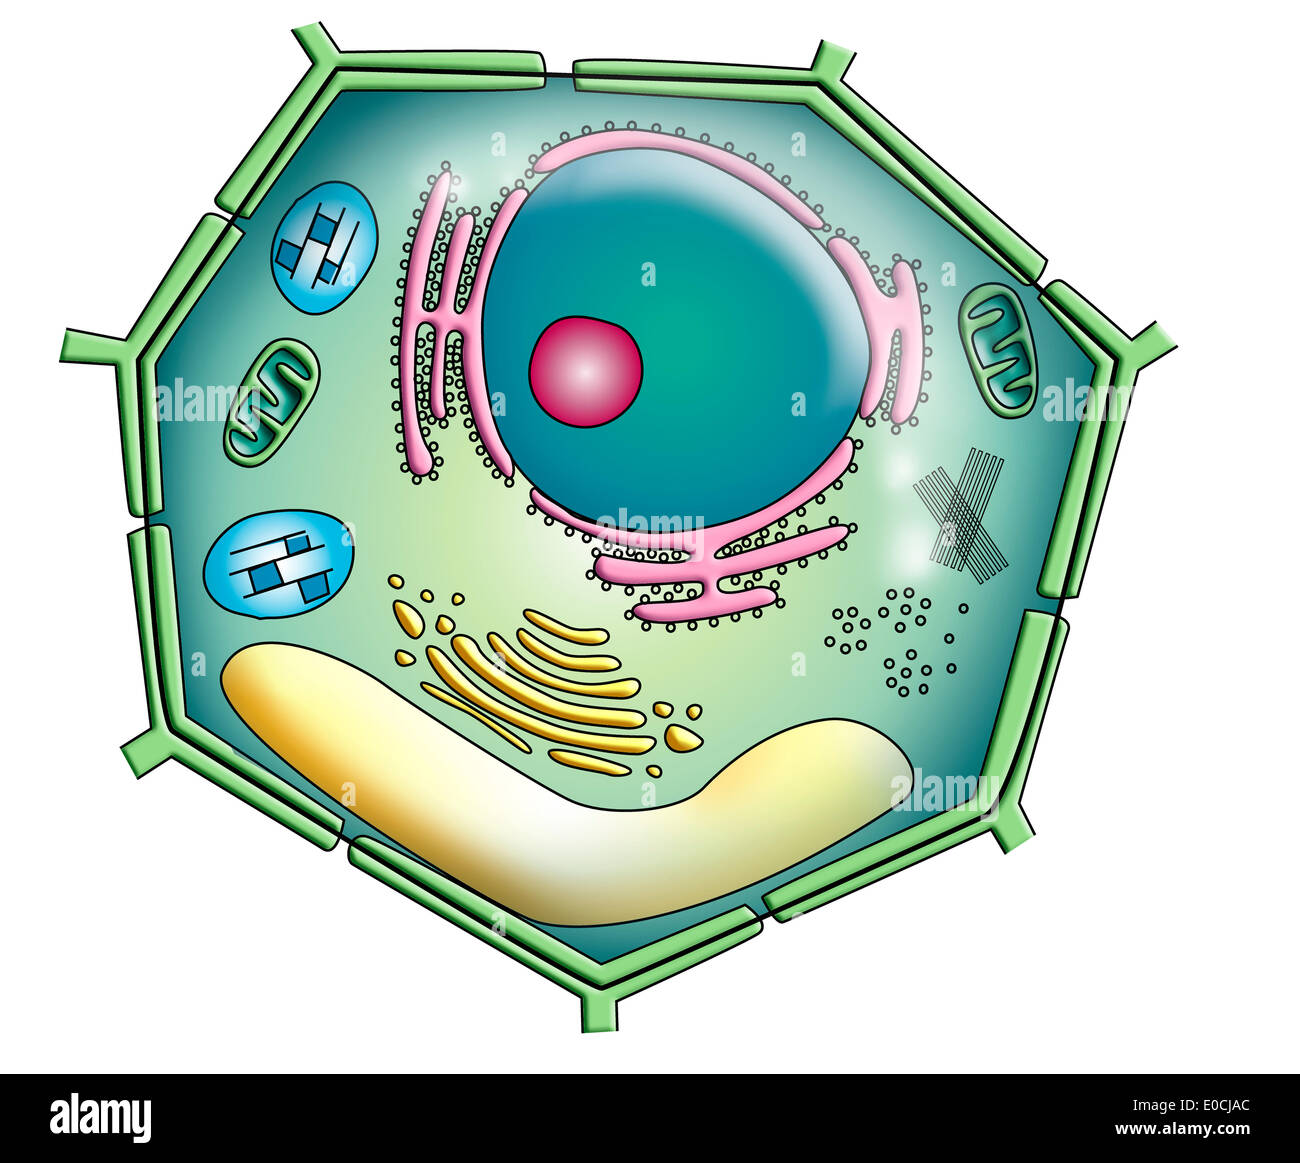 Pflanzenzelle, Zeichnung Stockfoto